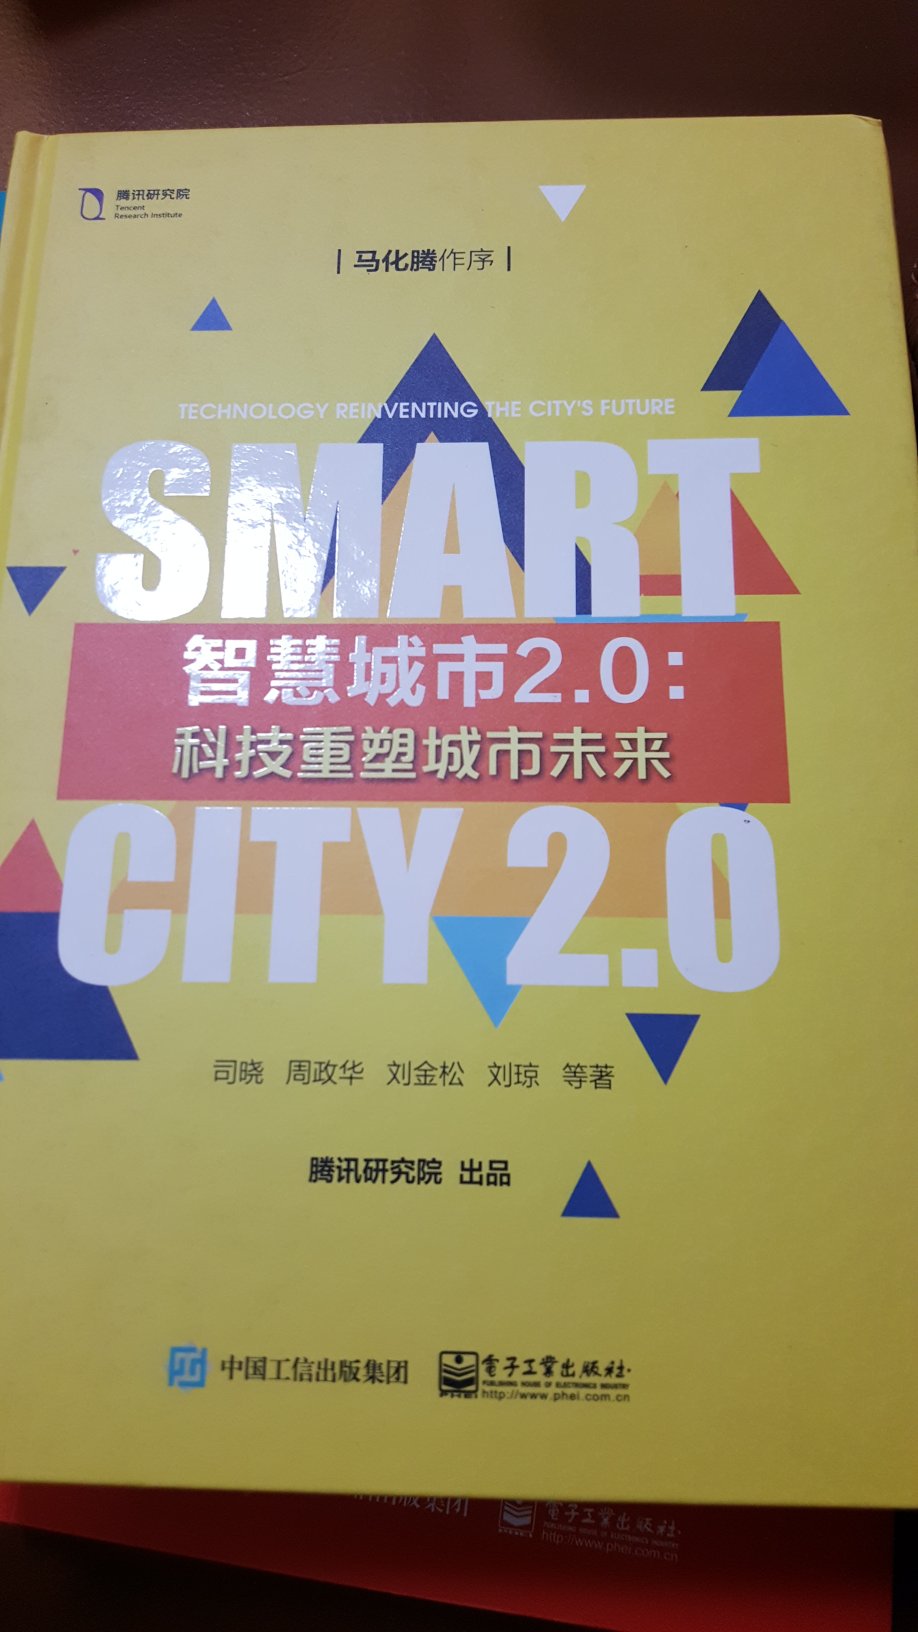 很浅的一本书，对于了解腾讯的智慧城市建设思路很有帮助。